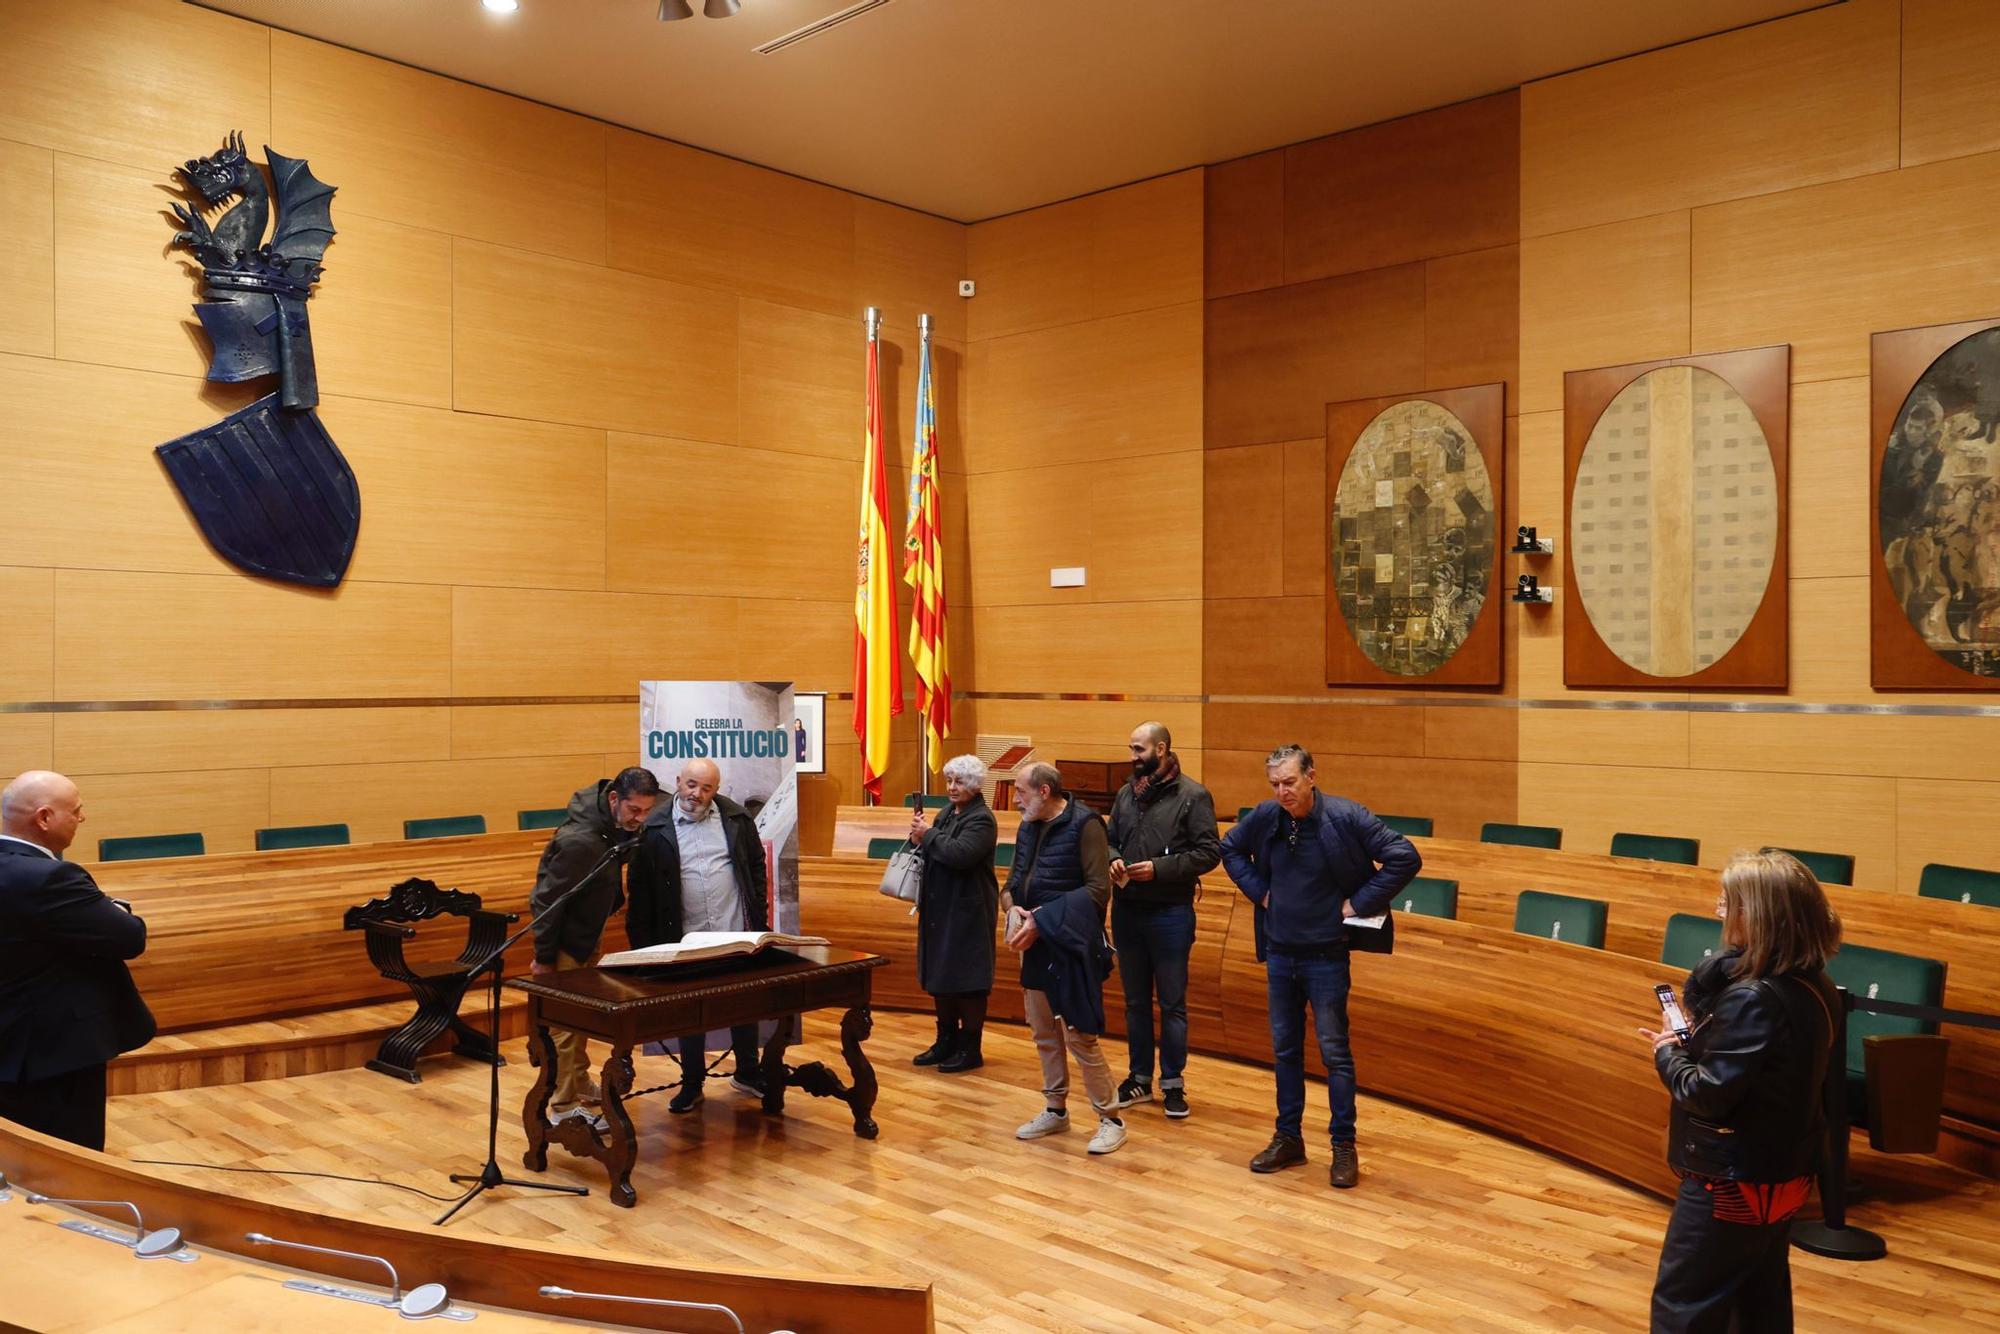 Los valencianos acuden al aniversario de la Constitución en la Diputación de València